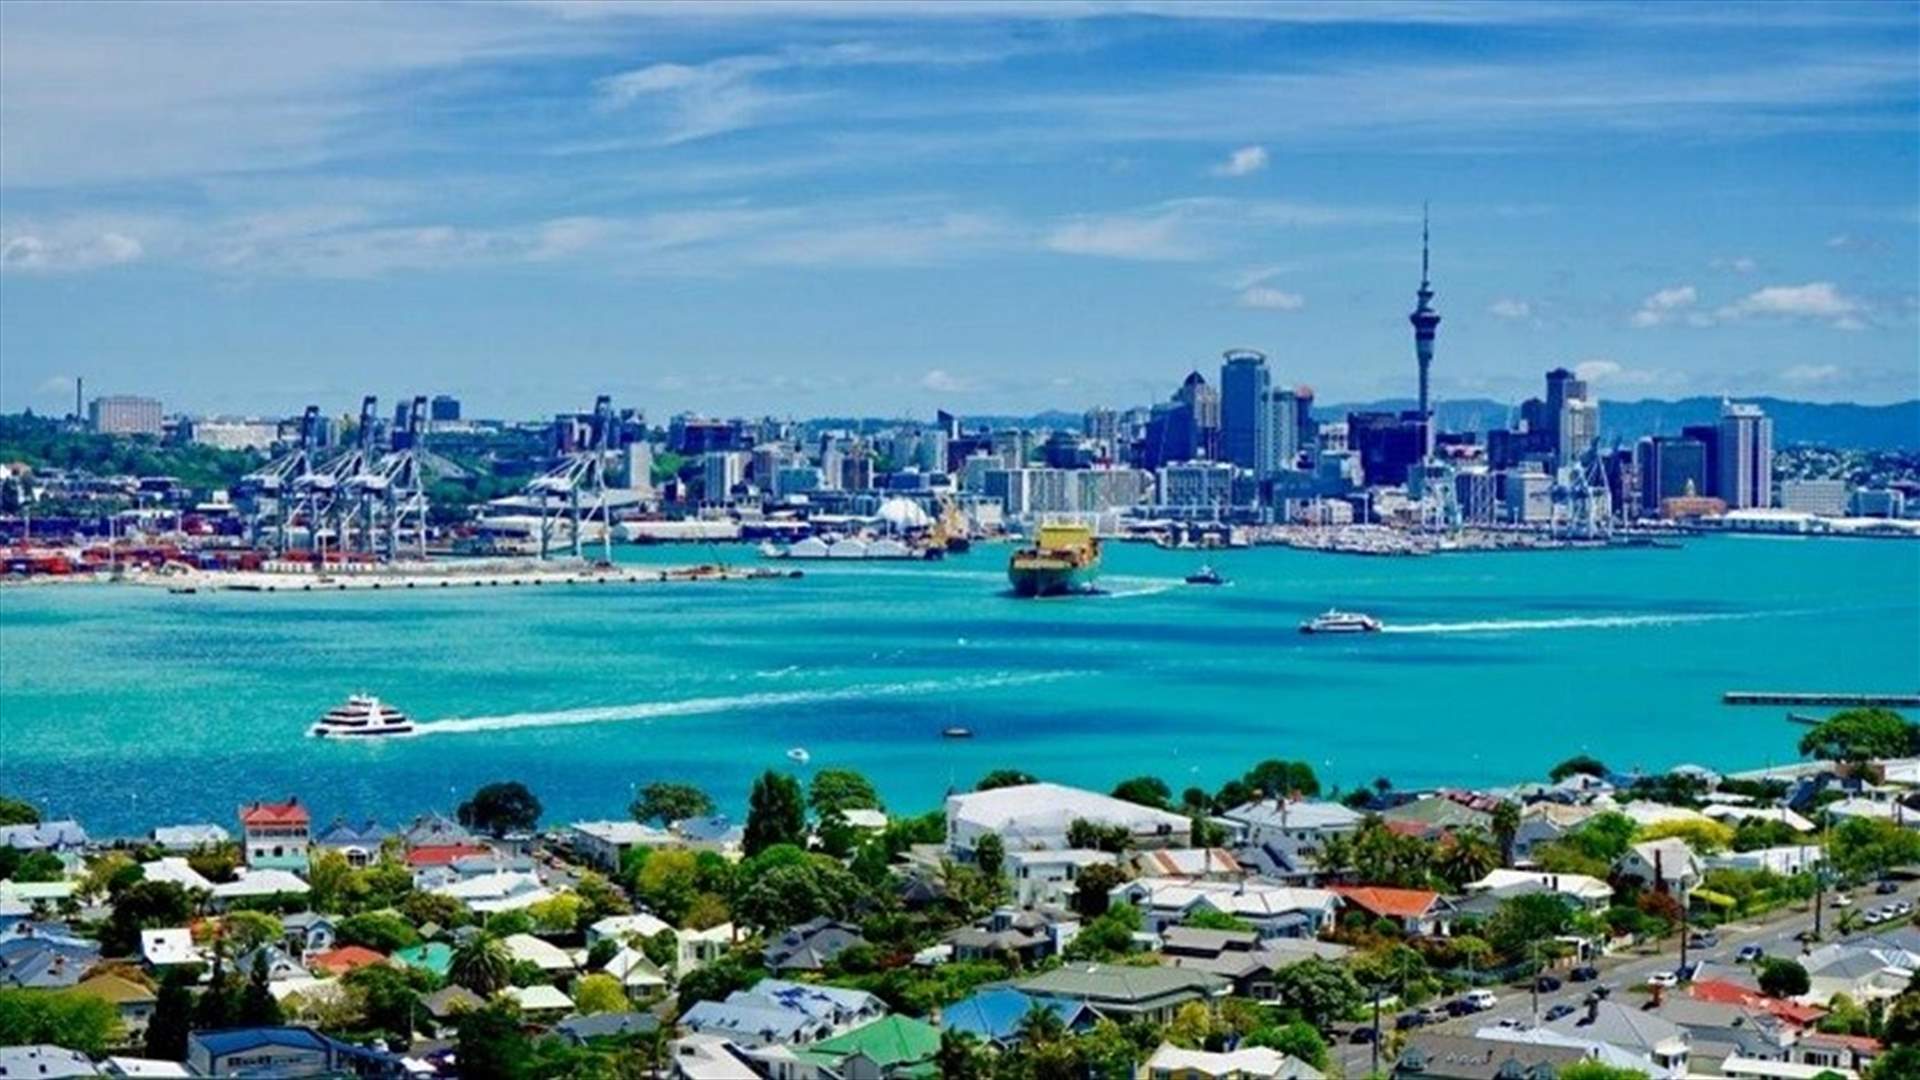 نيوزيلندا تمدد إغلاق كوفيد-19 في أوكلاند